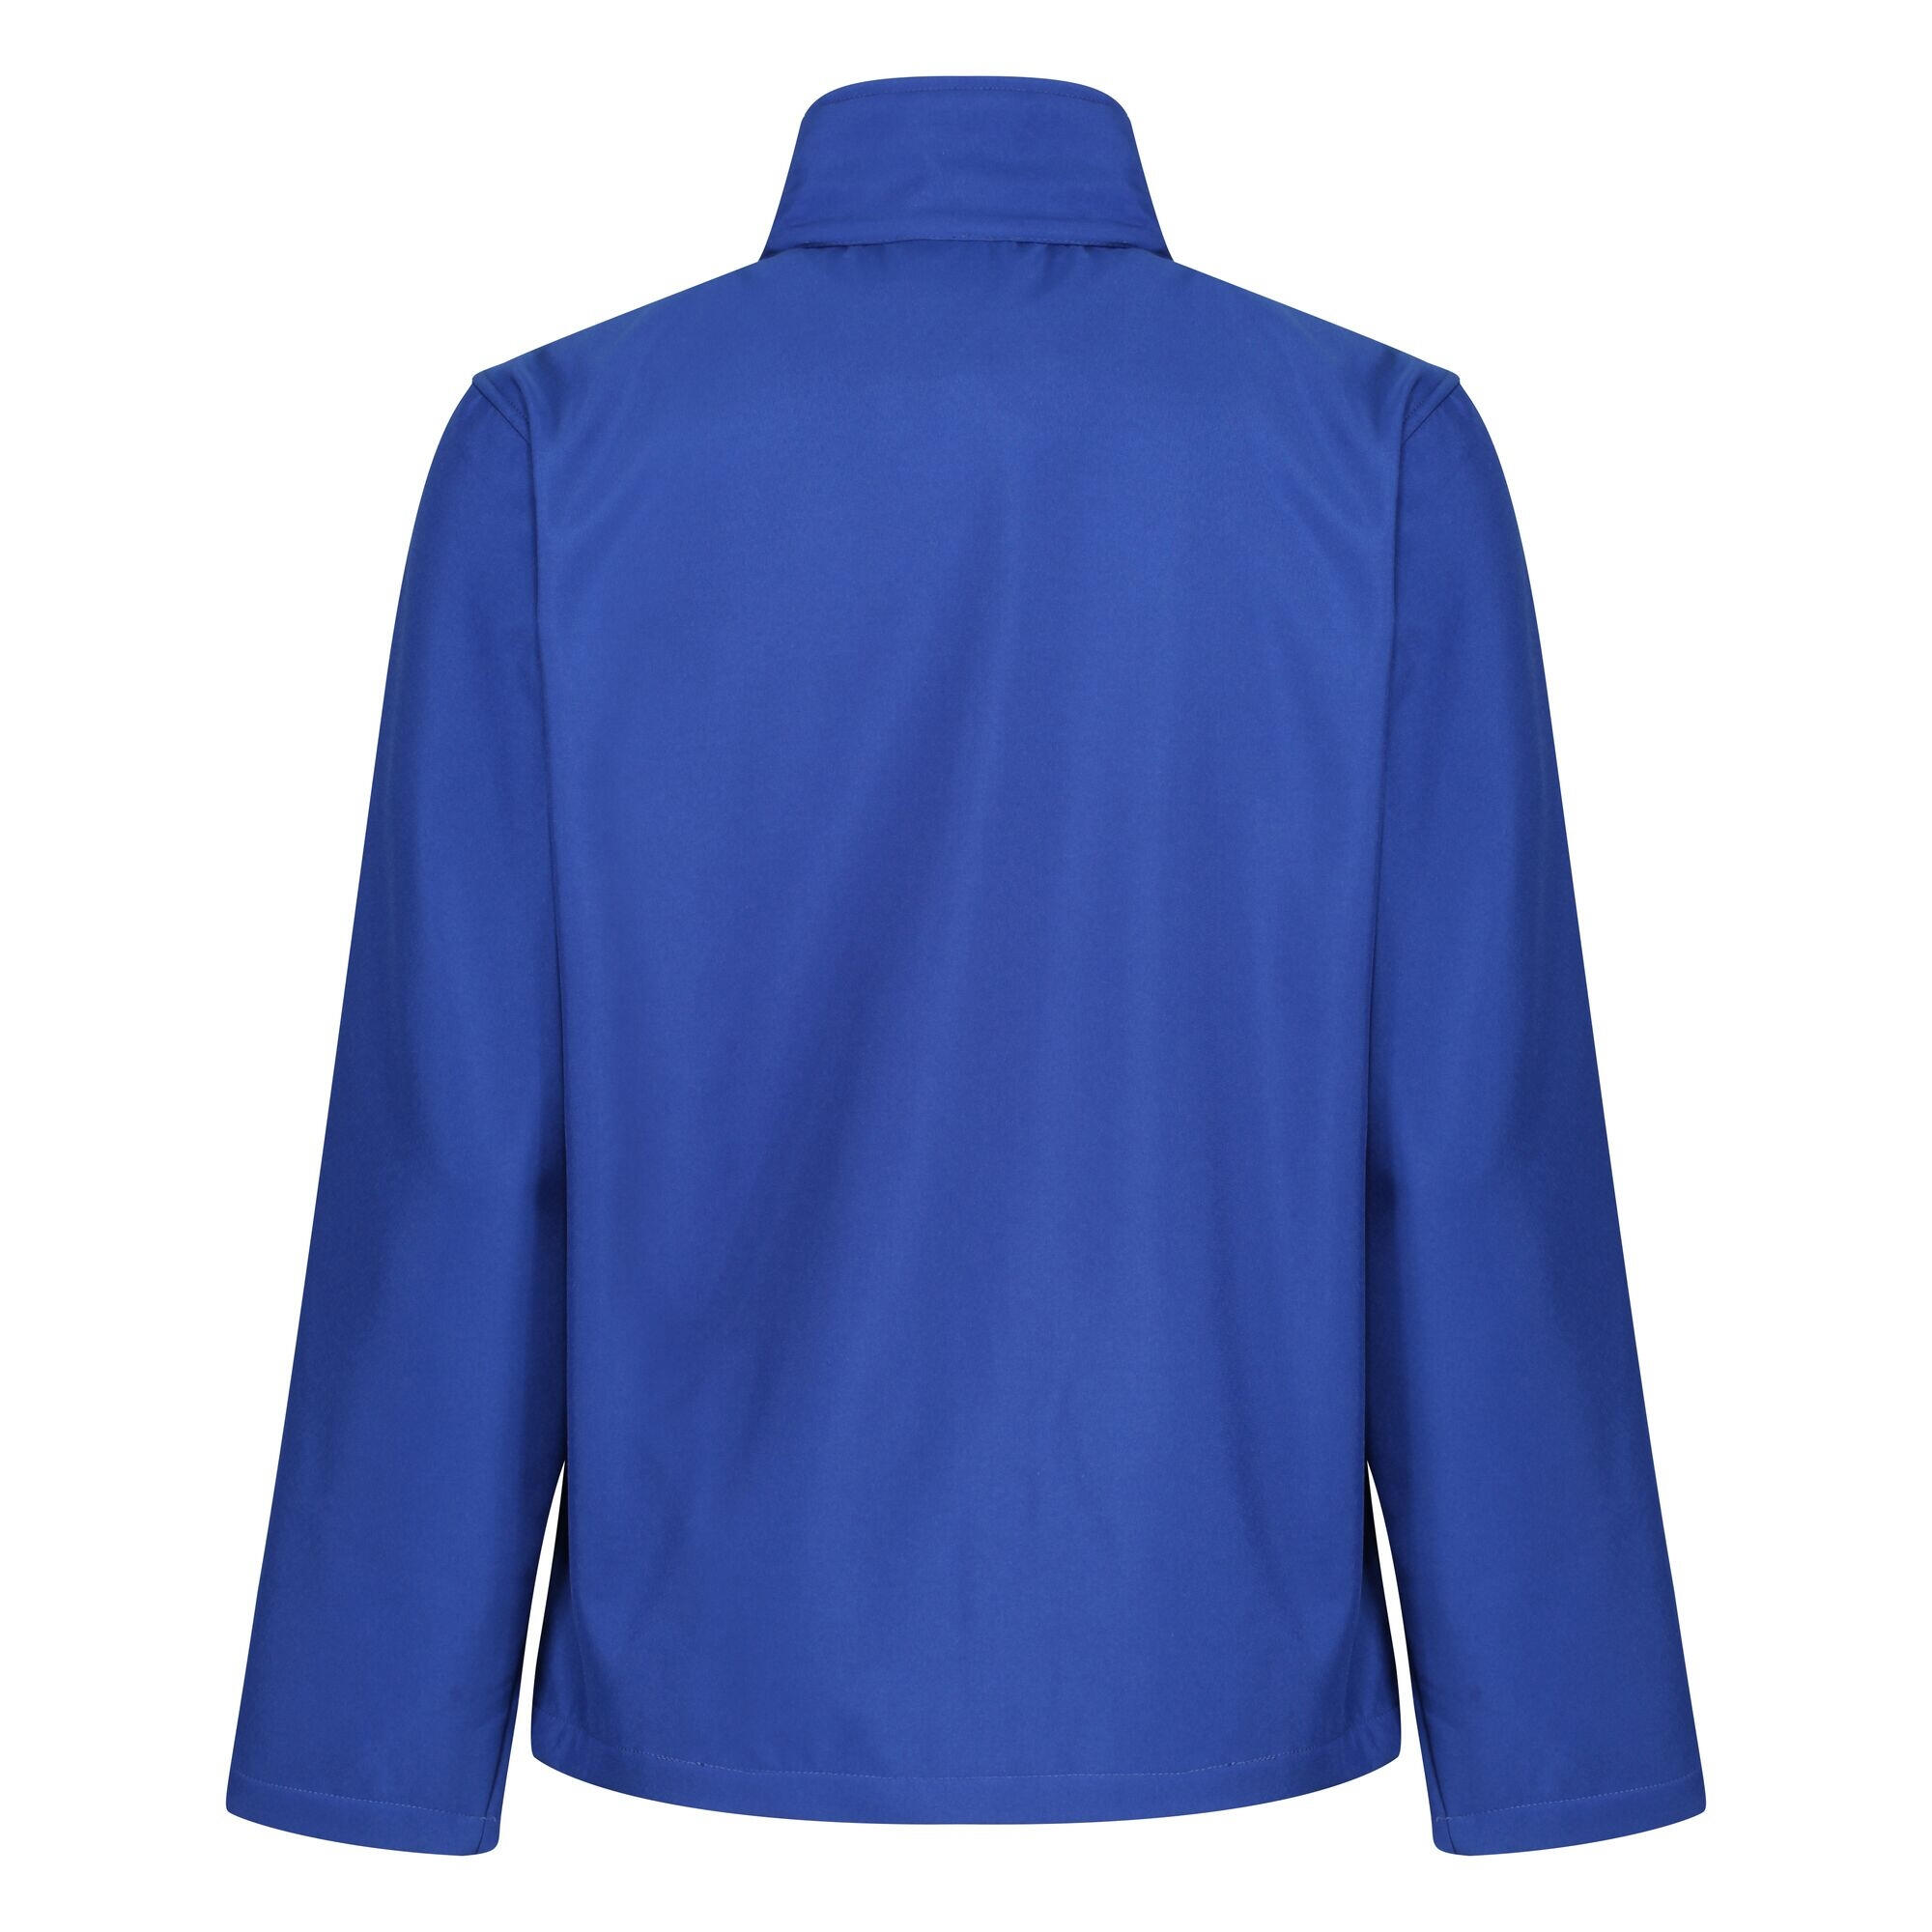 Mens Ablaze Printable Softshell Jacket (Royal Blue/Black) 2/4